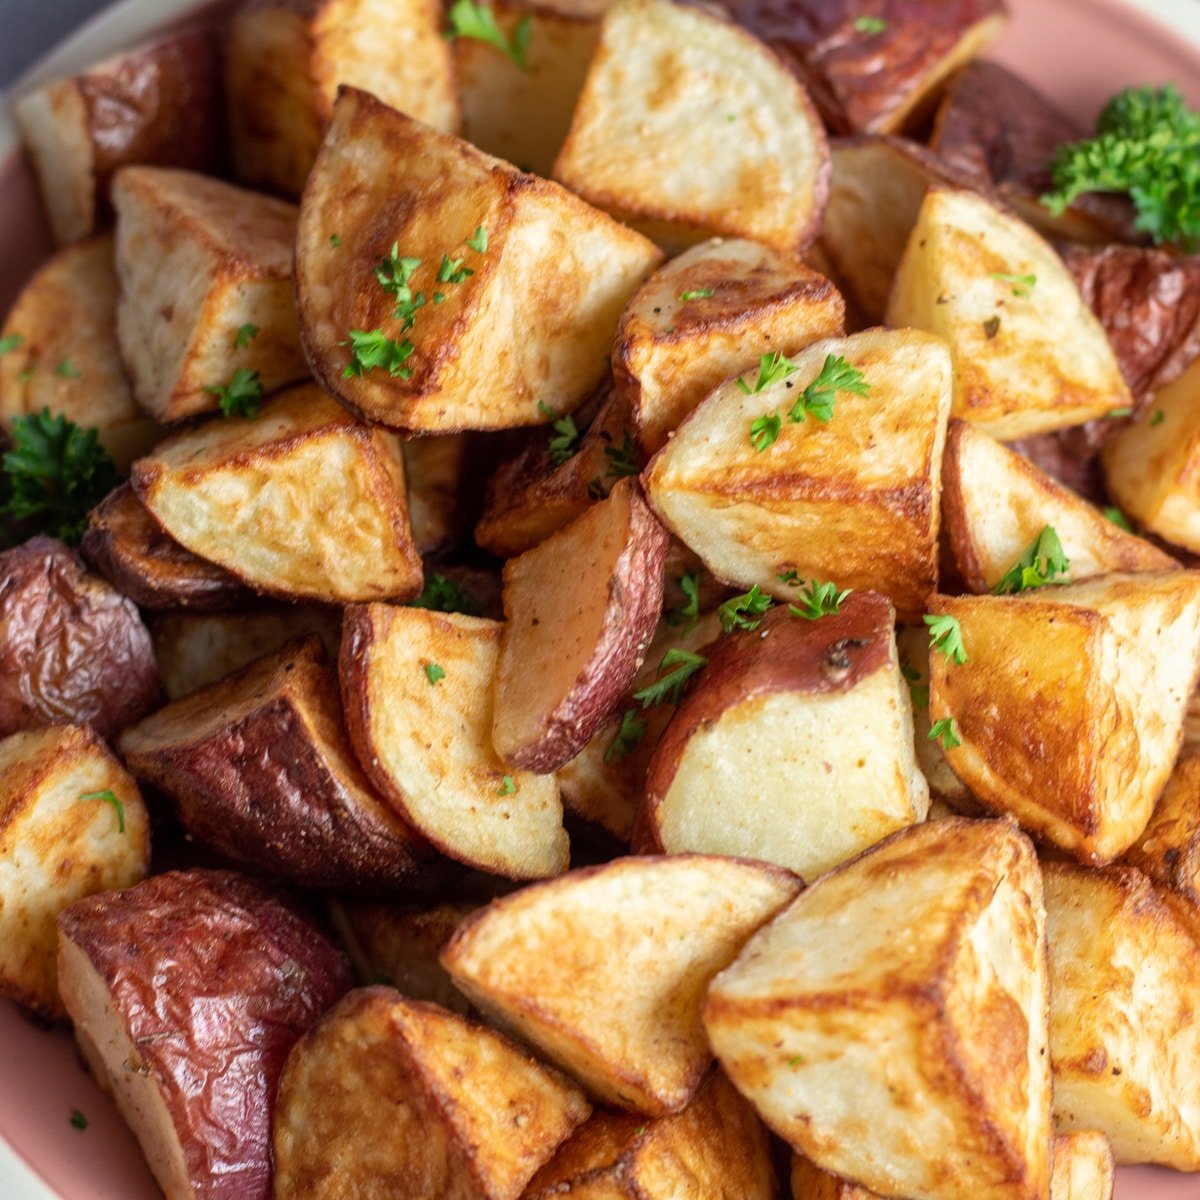 Servis için tabağa yığılmış mükemmel çıtır kavrulmuş kırmızı patates.